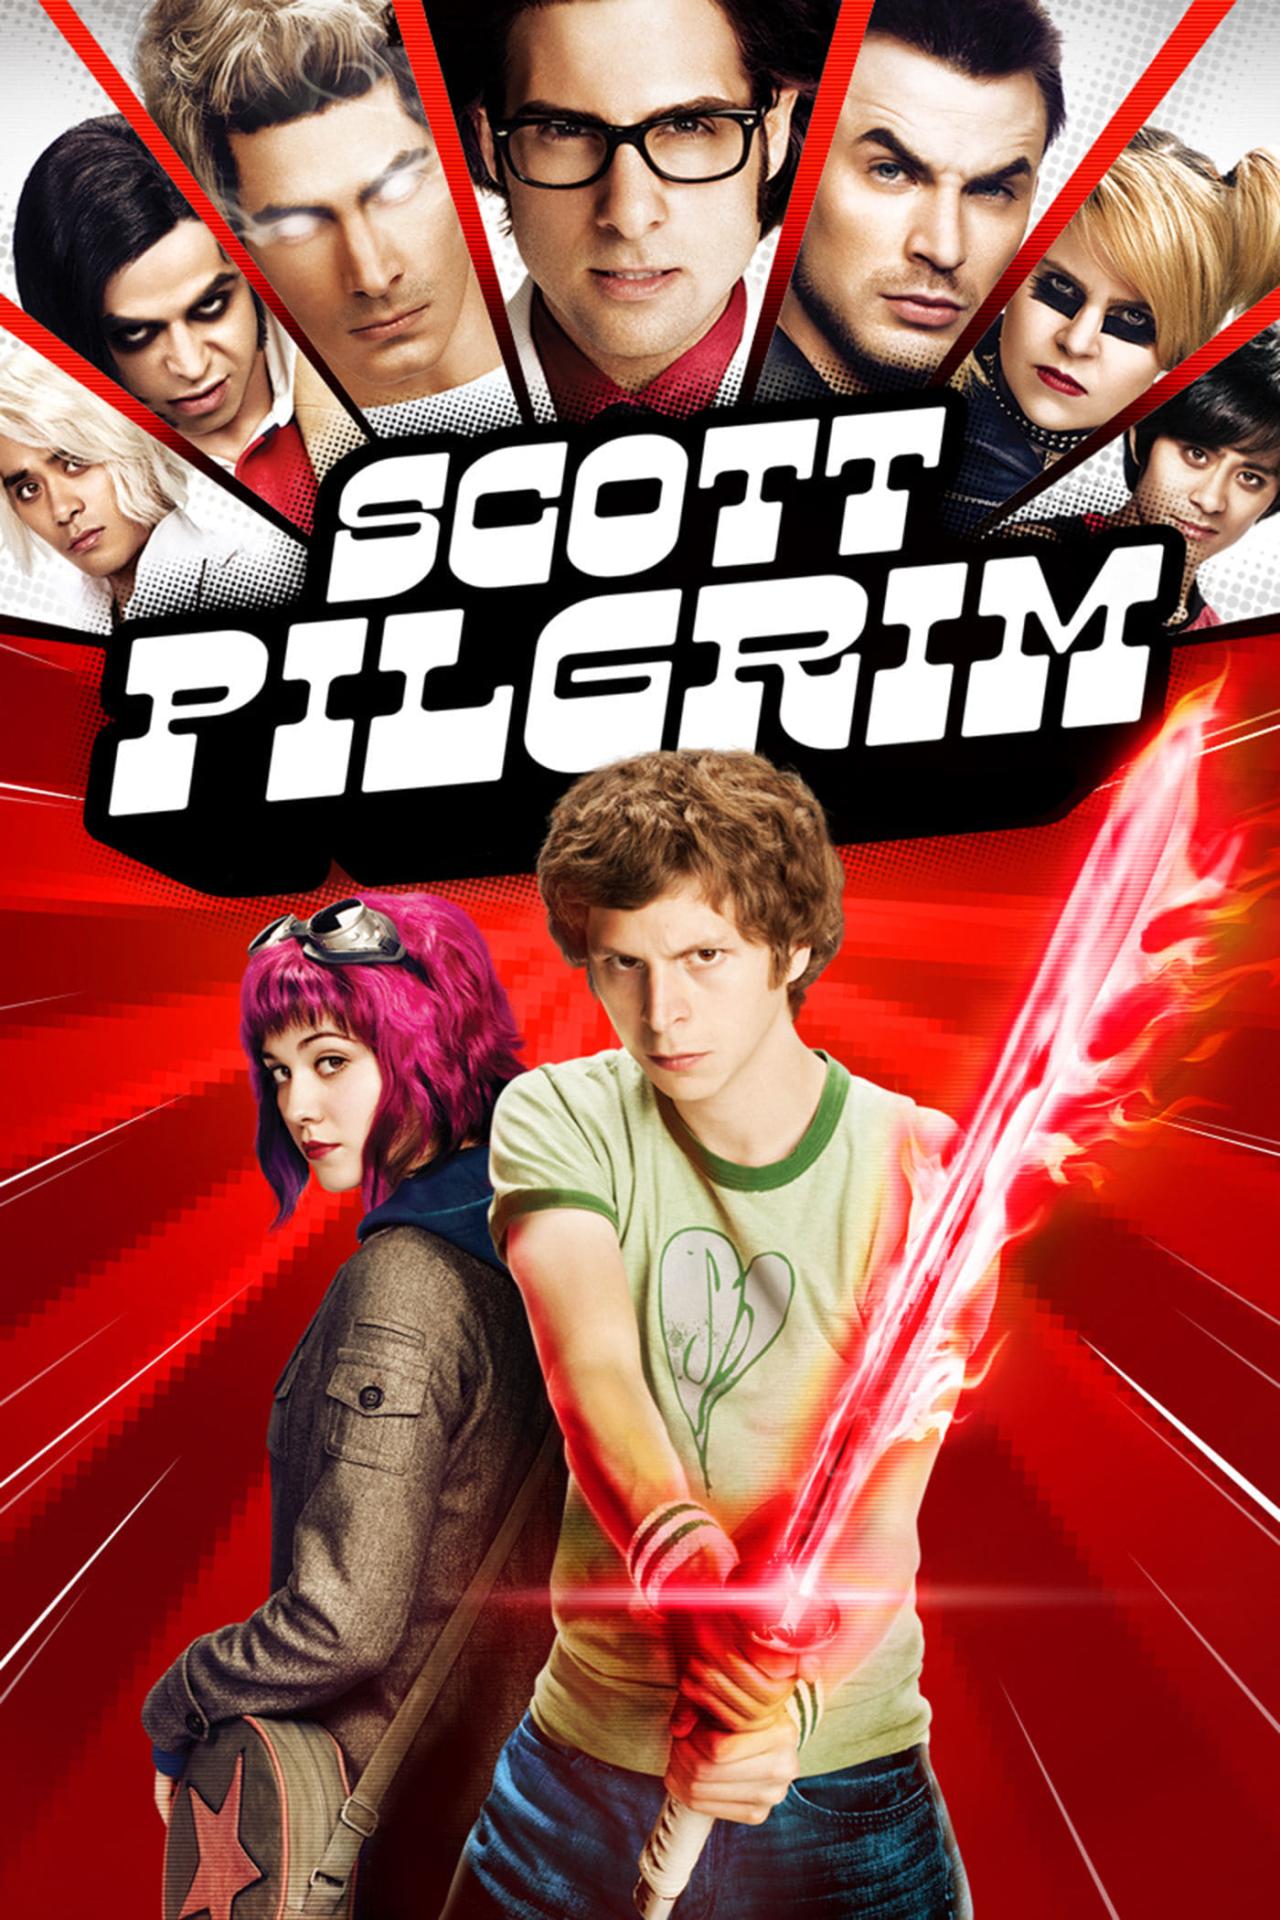 Scott Pilgrim est-il disponible sur Netflix ou autre ?